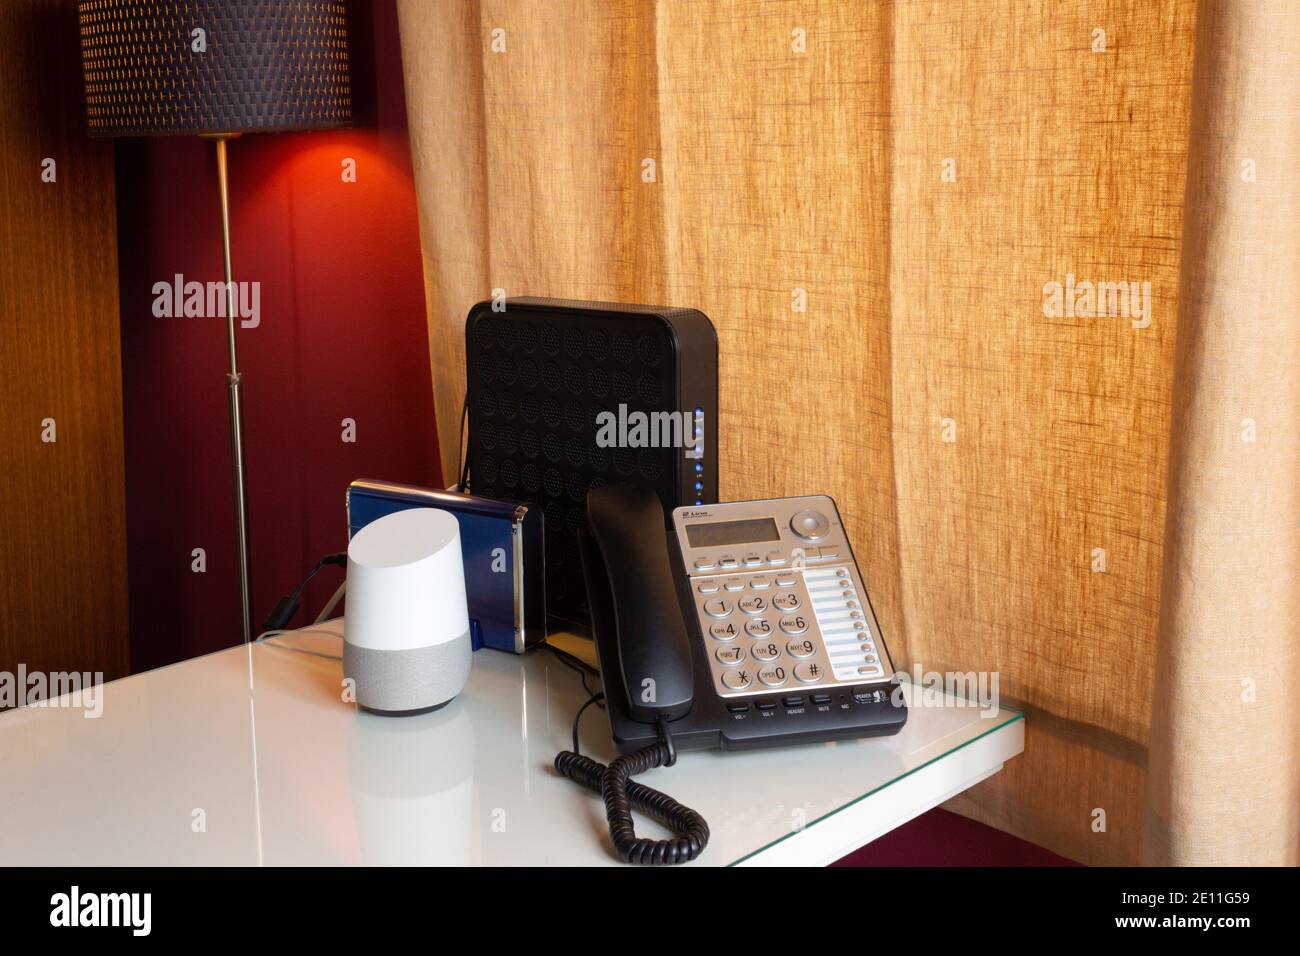 escritorio de oficina en casa con una voz activada, asistente inteligente virtual, un teléfono fijo y dos routers en un escritorio blanco con una lámpara iluminada Foto de stock